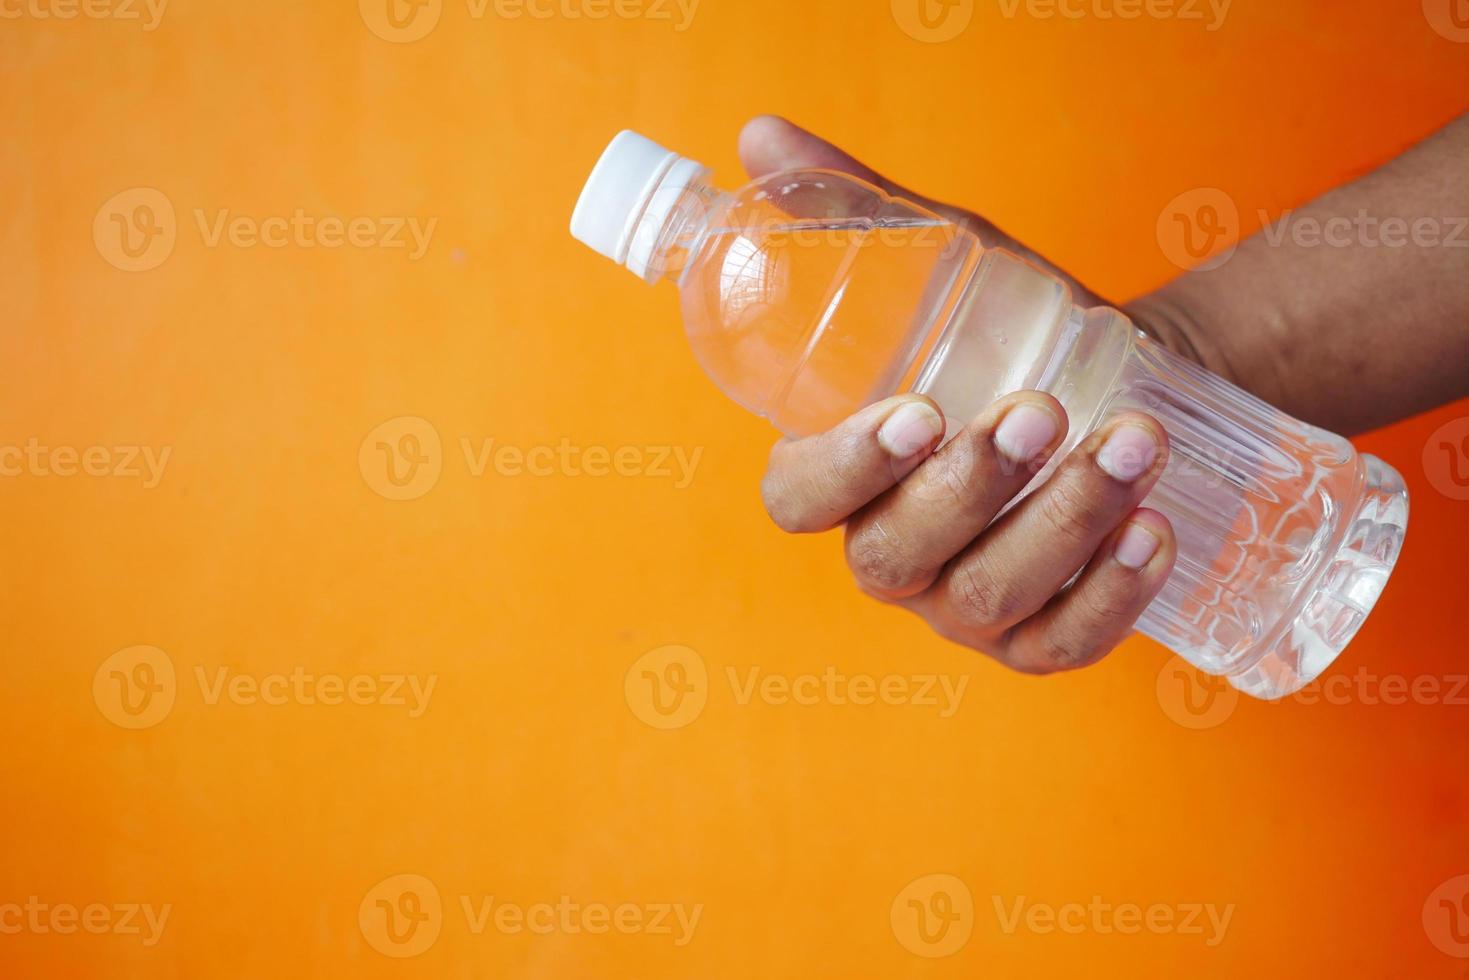 bouteille d'eau potable fraîche dorée à la main photo